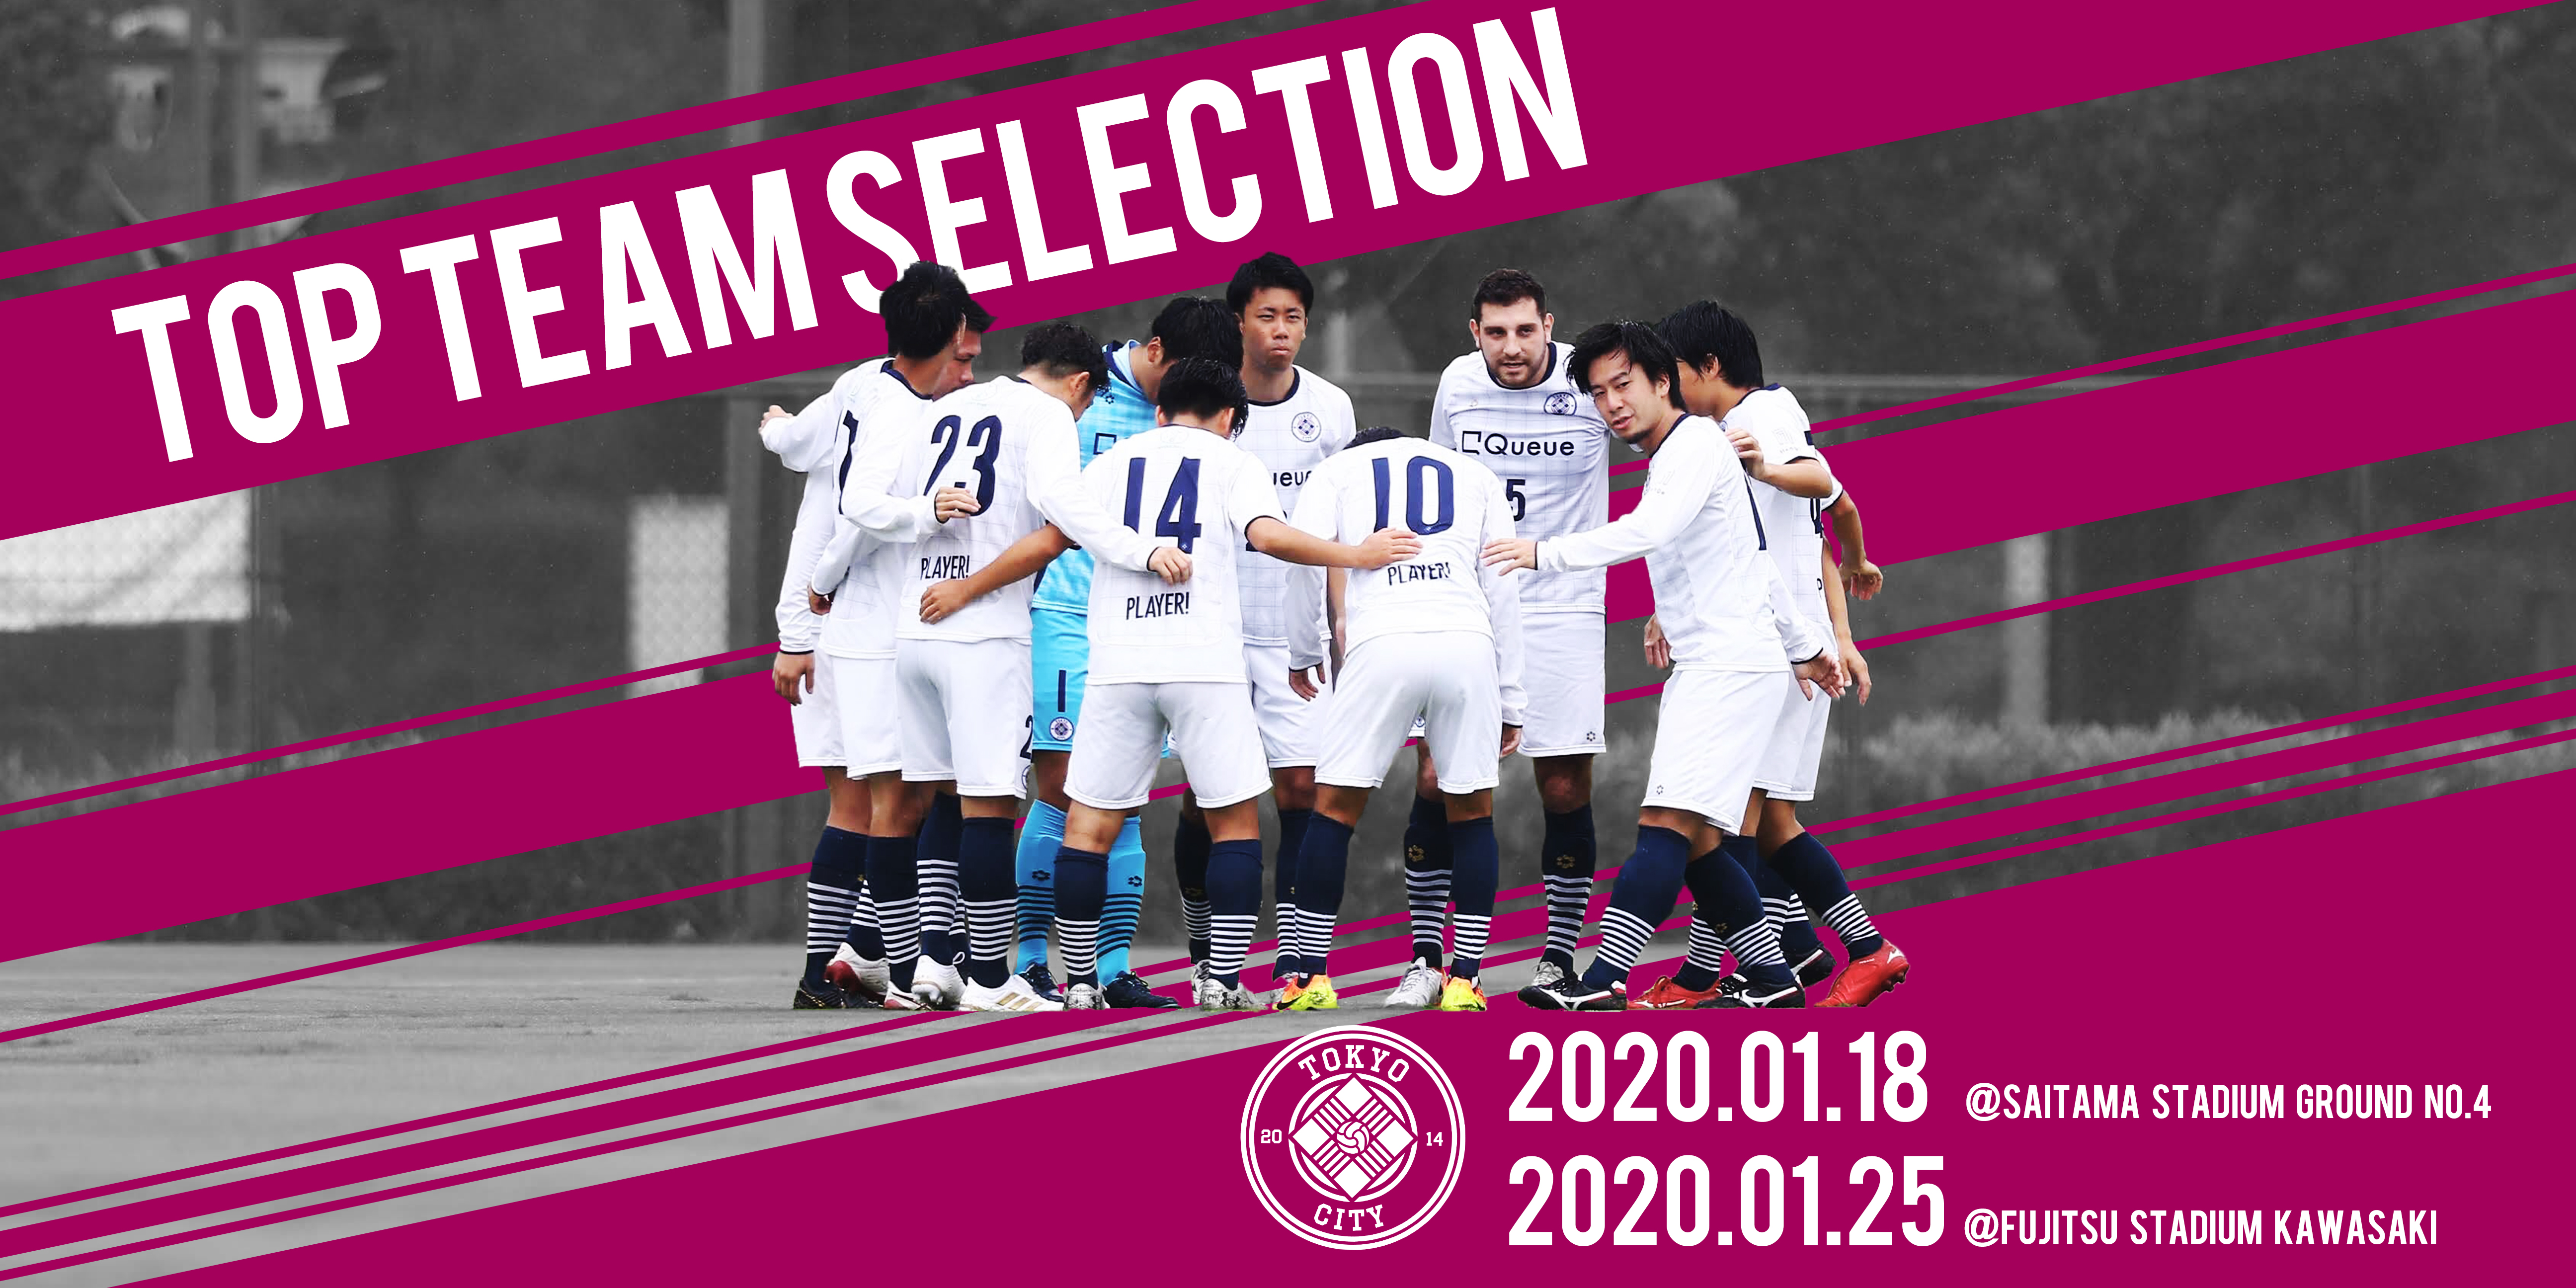 Tokyo City F C シーズンを共に戦う仲間を募集 するべくトップチームセレクションを開催します 株式会社playnewのプレスリリース